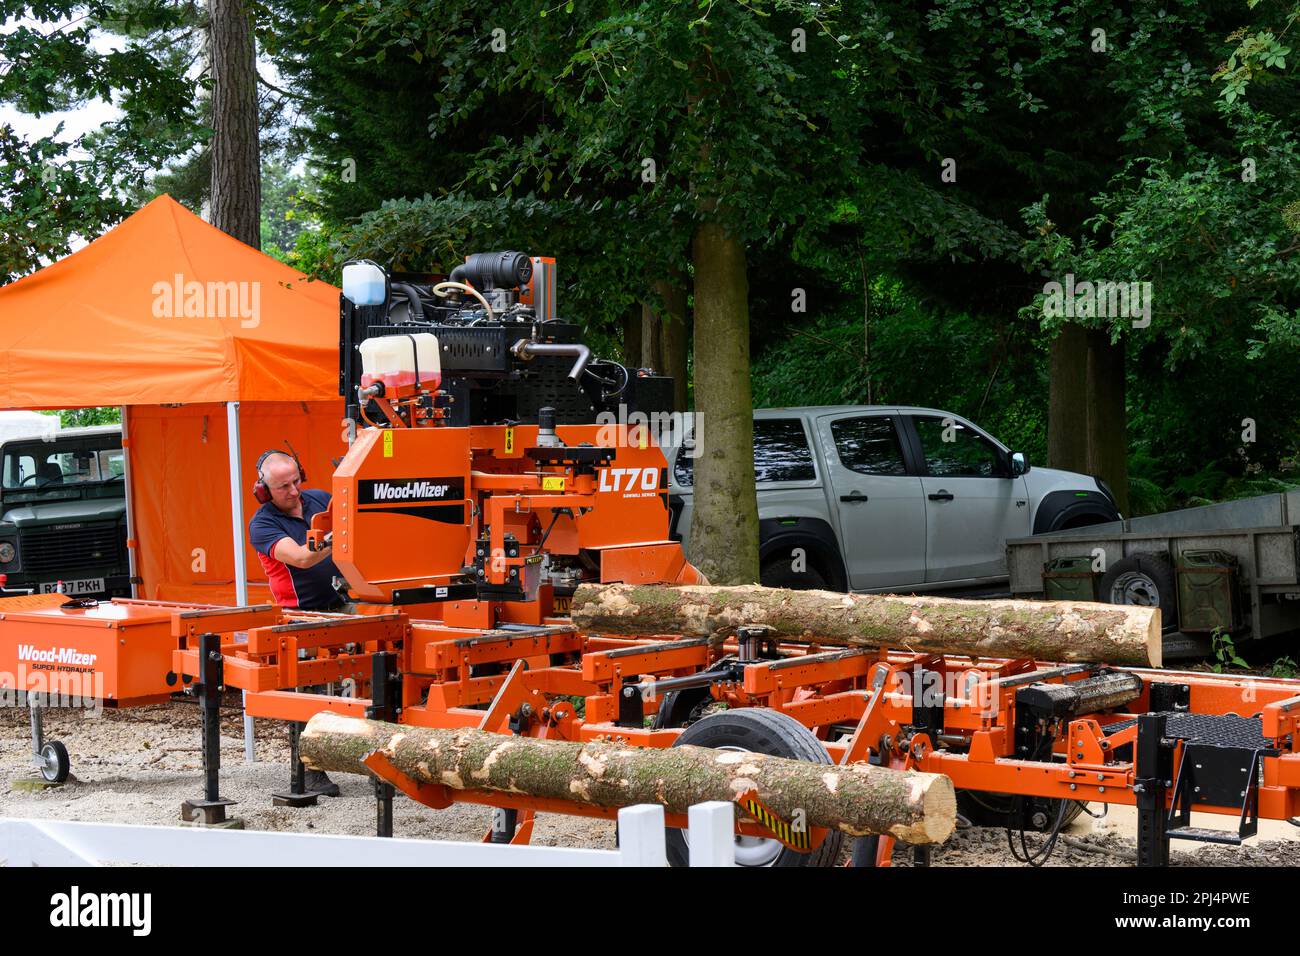 Exposition de machines industrielles Wood-Mizer (présentant des échanges, événement de vente agricole) - Great Yorkshire Show 2022, Harrogate, Angleterre, Royaume-Uni. Banque D'Images